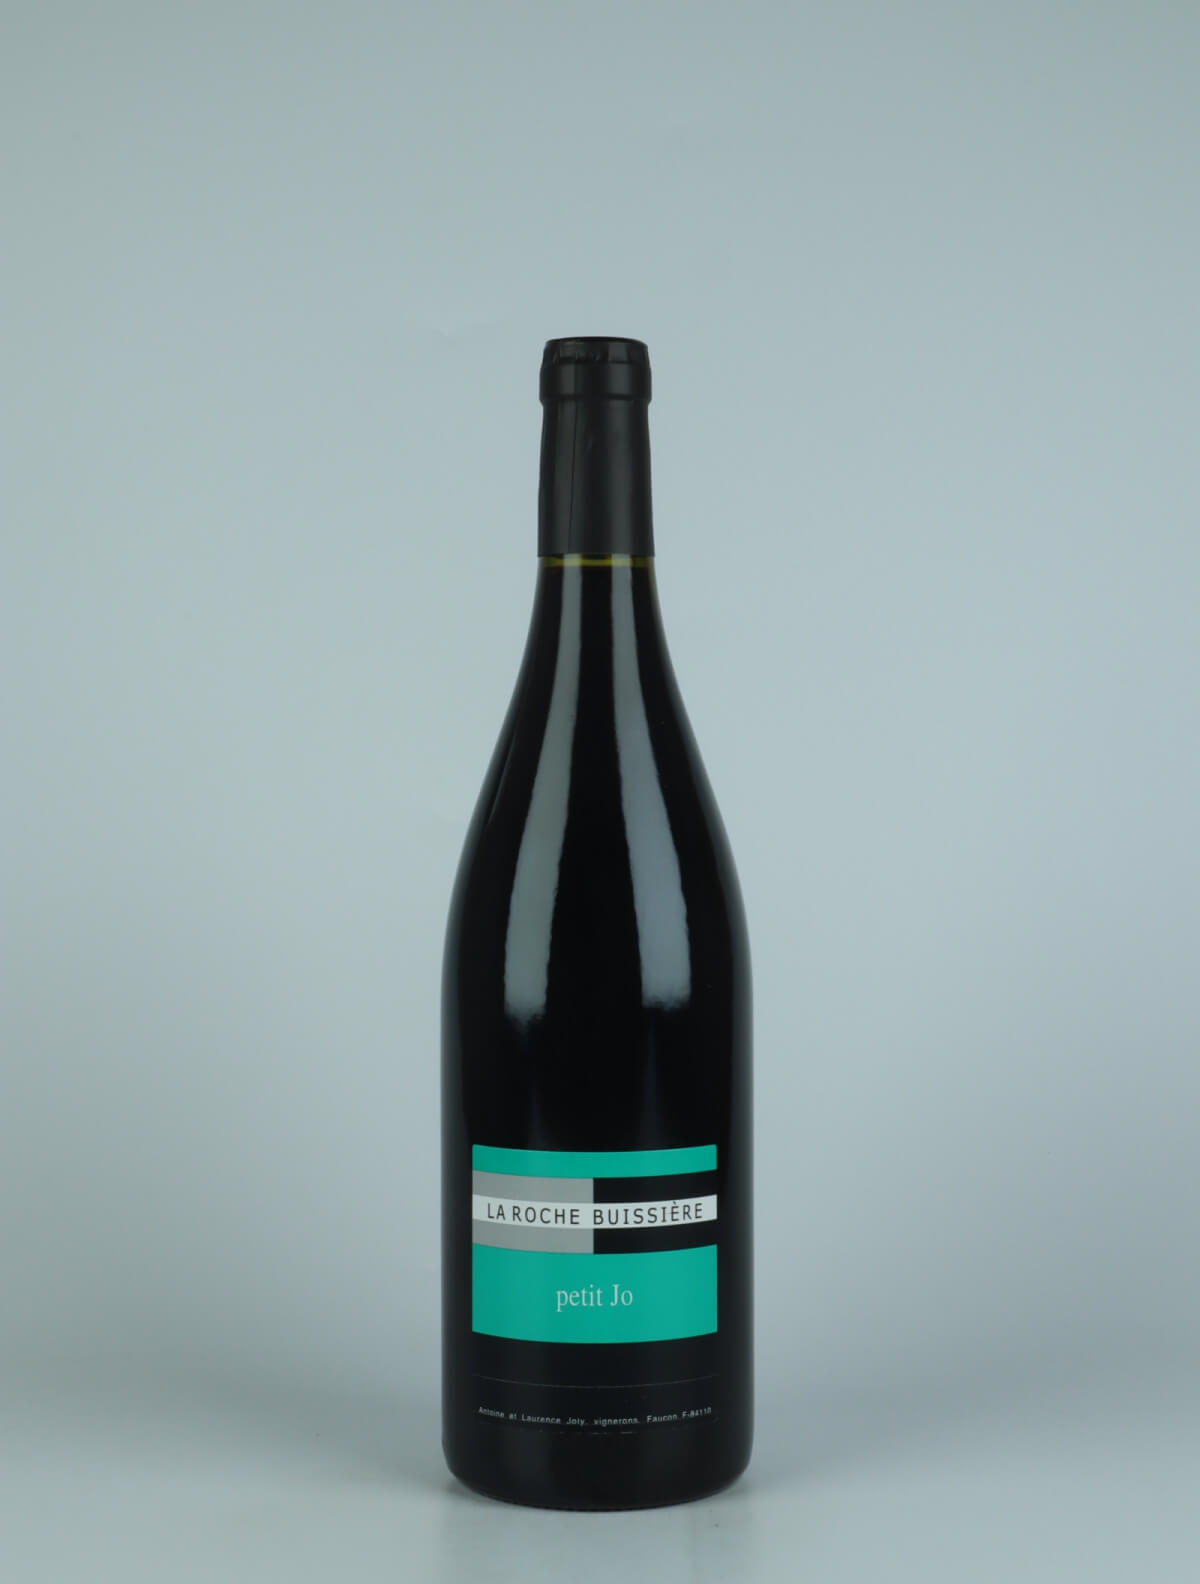 A bottle N.V. Petit Jo (2020) Red wine from La Roche Buissière, Rhône in France